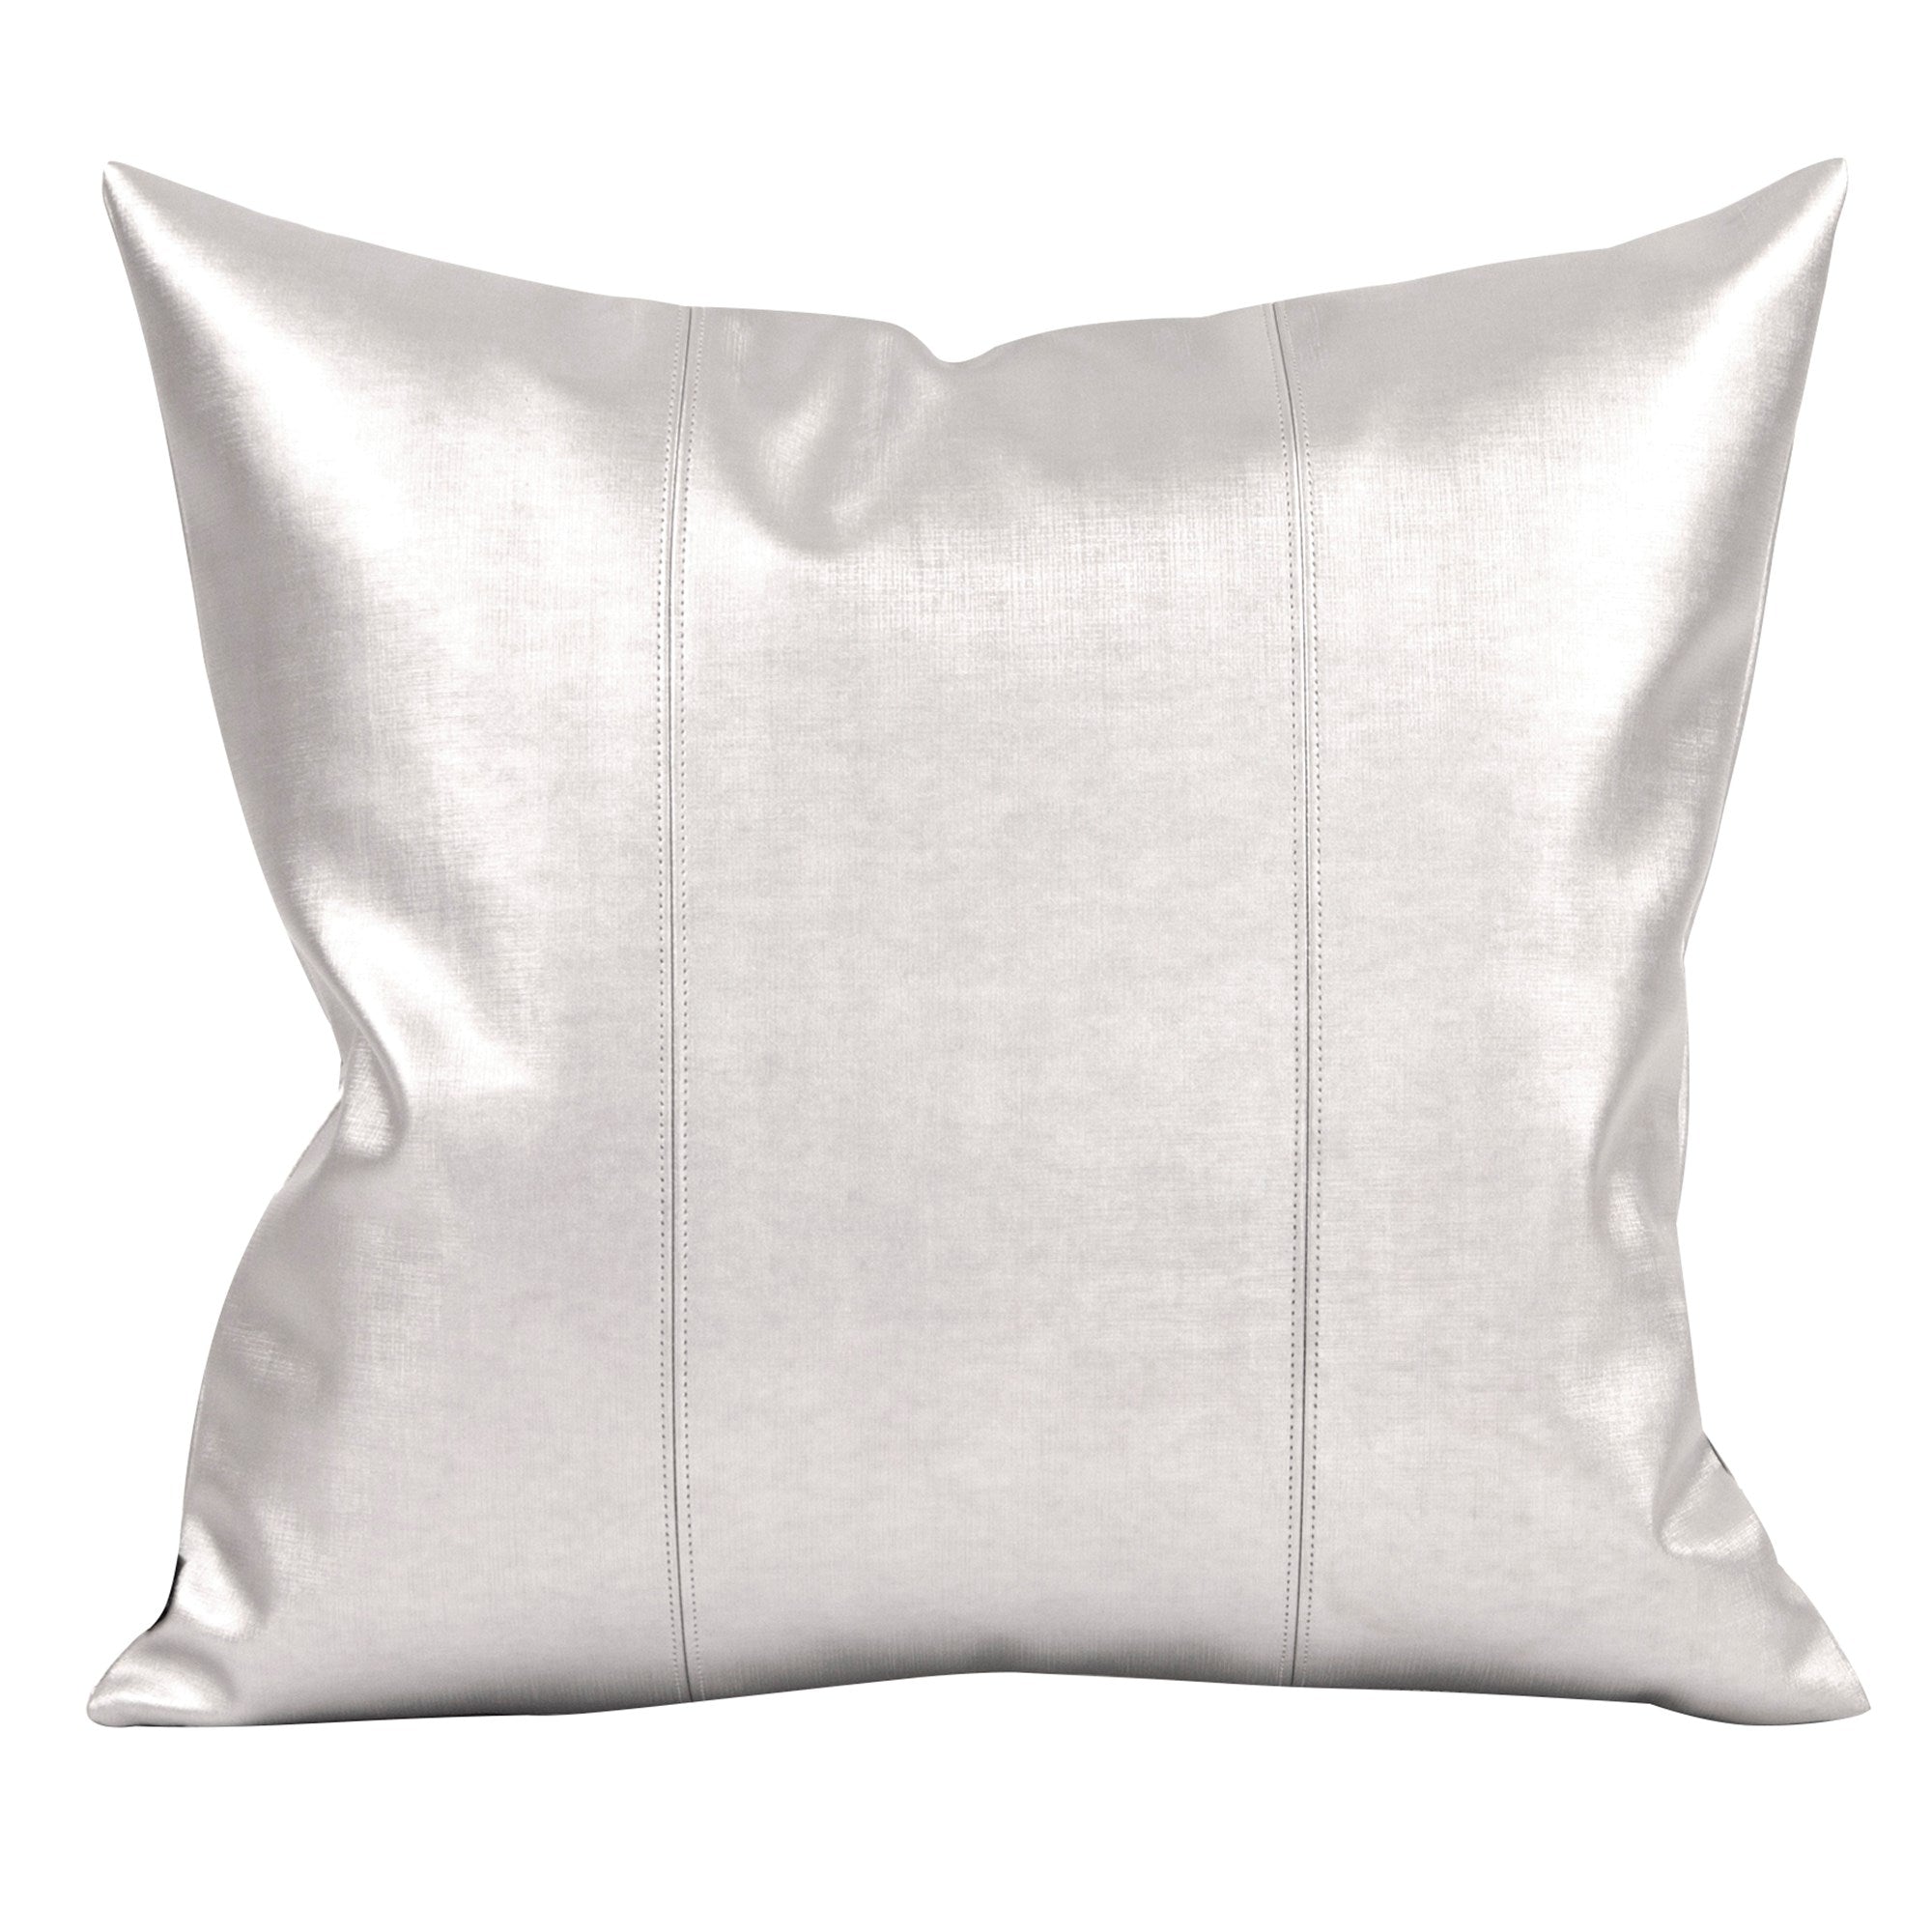 Luxe Mercury Pillow- 20" x 20"